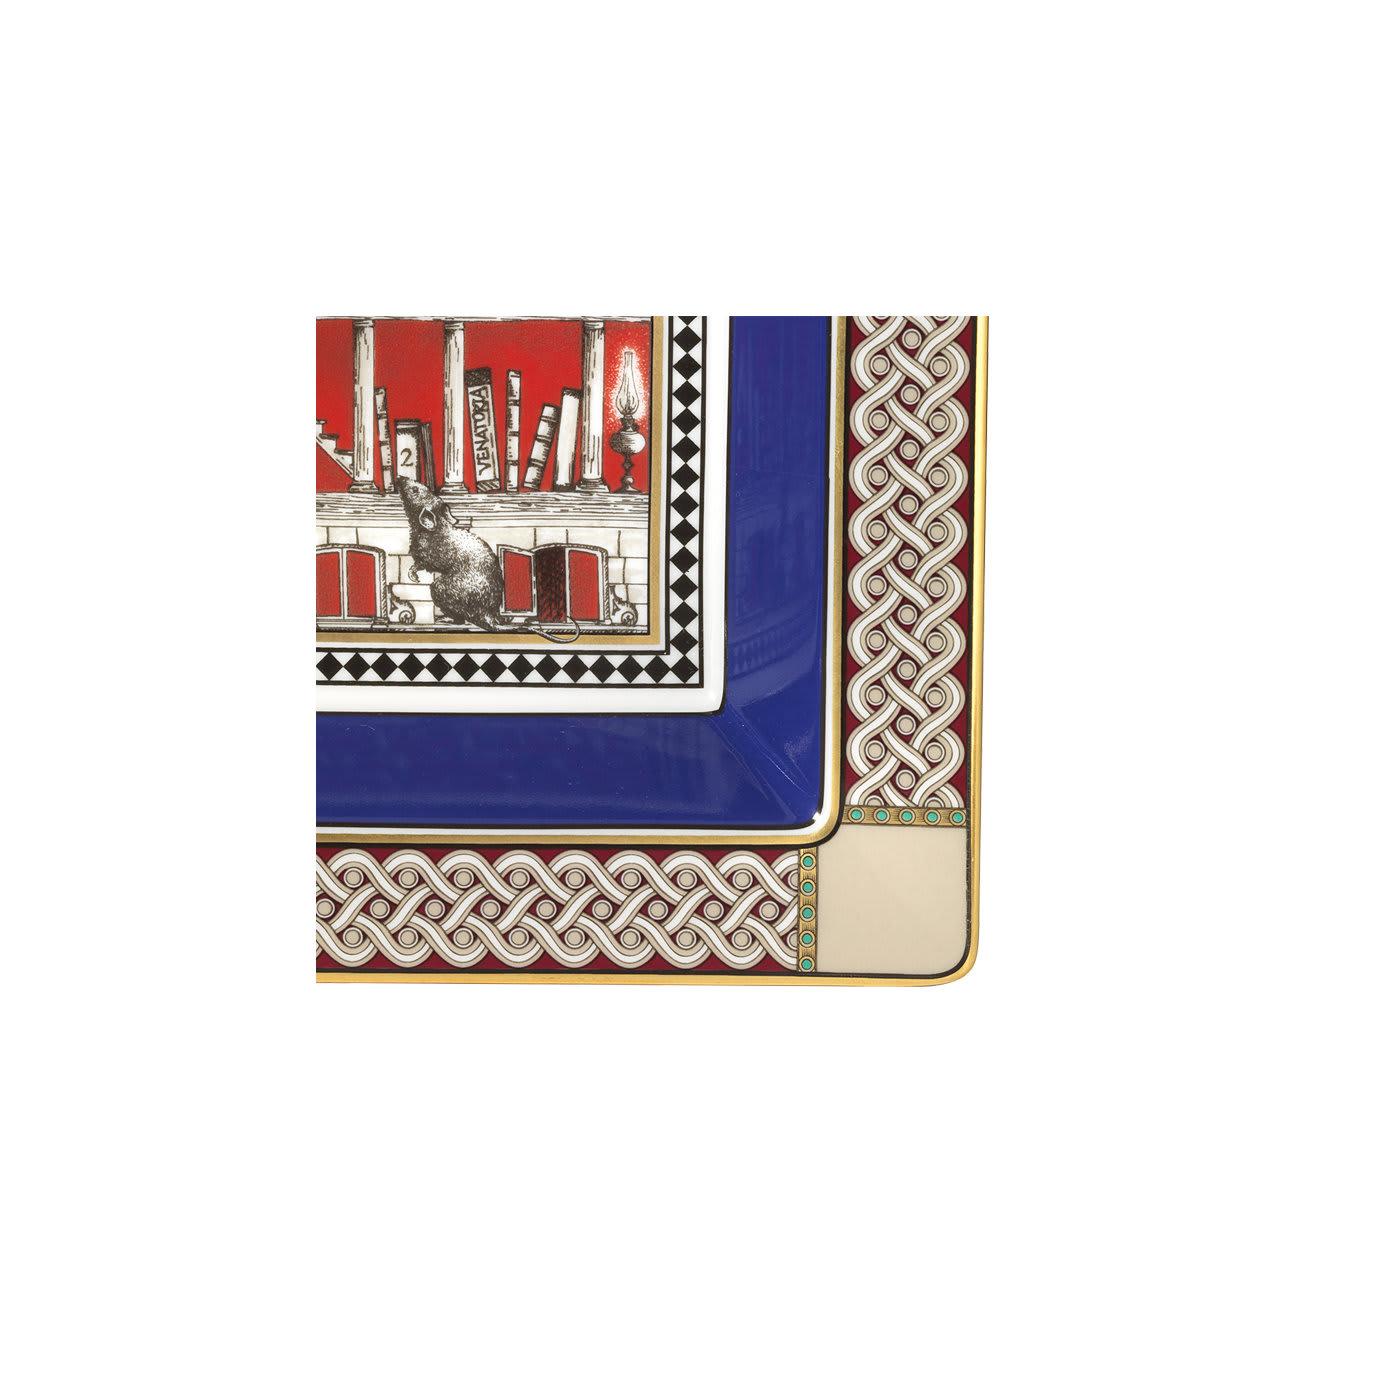 Inspiré par l'art décoratif du XVIIIe siècle, ce grand plateau carré à poches vides est fabriqué en porcelaine exquise et peint avec les couleurs vibrantes de la Nature. Topo (souris) est l'animal symbole de la sagesse, dont la tâche est de servir